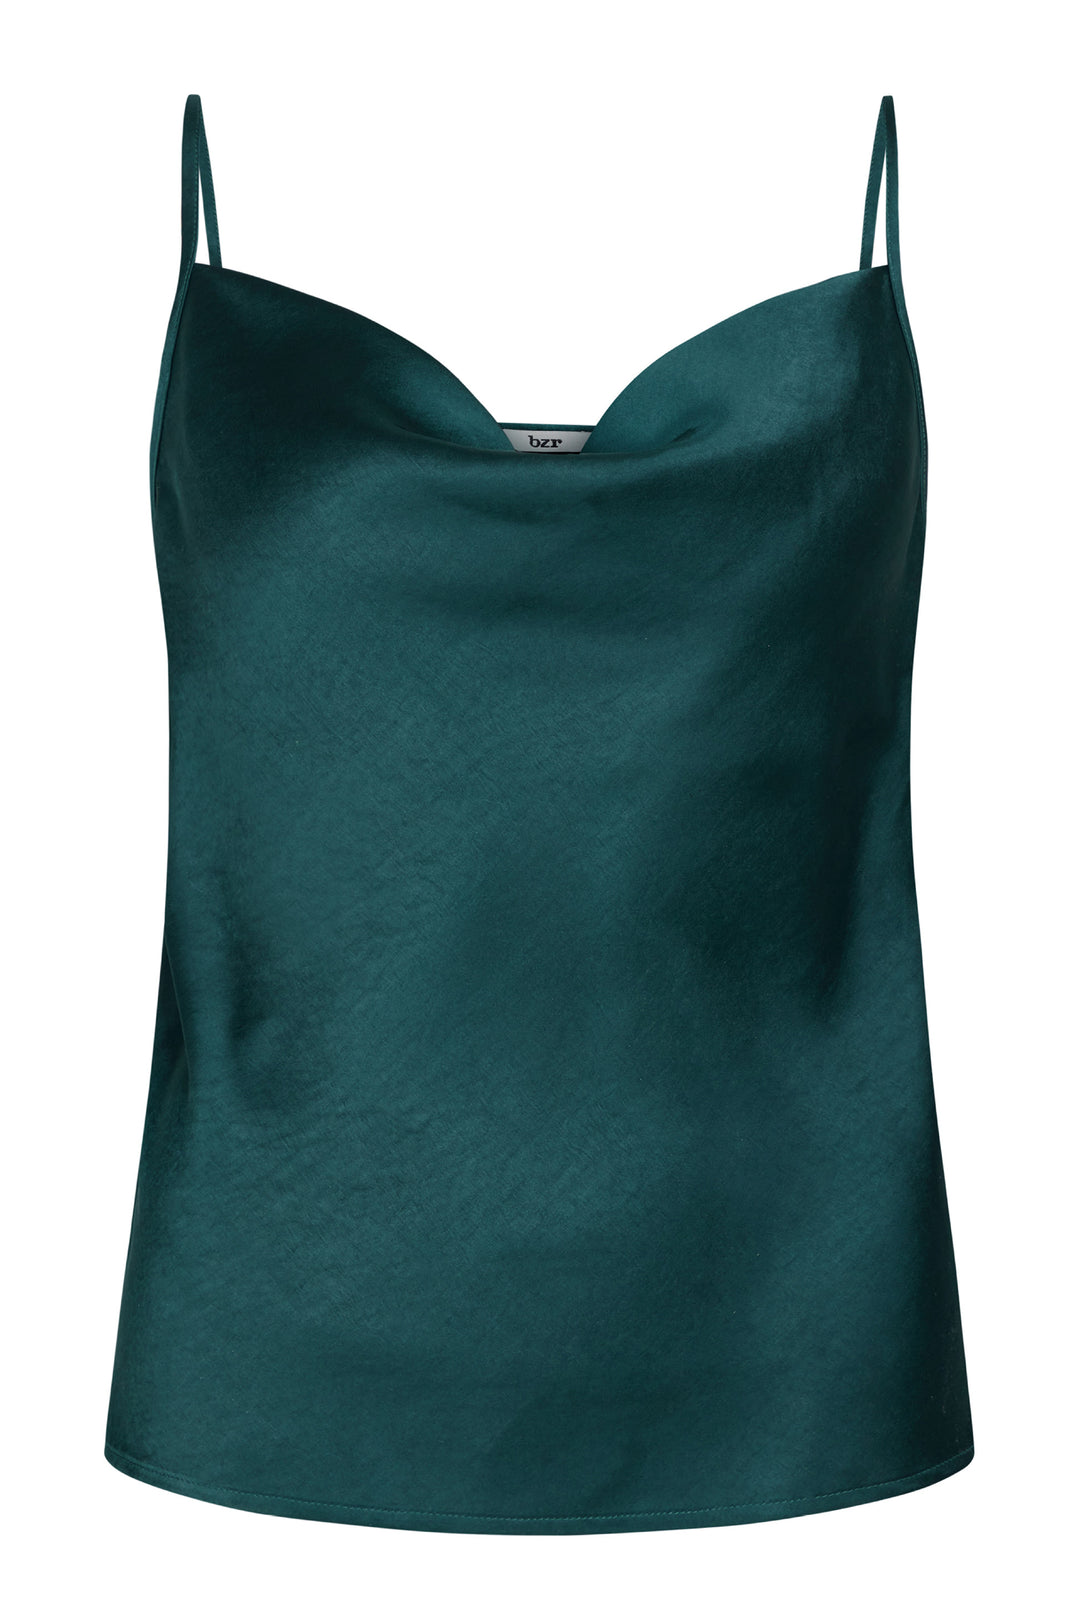 bzr Satina Easy Top – blouses & shirts – shop at Booztlet